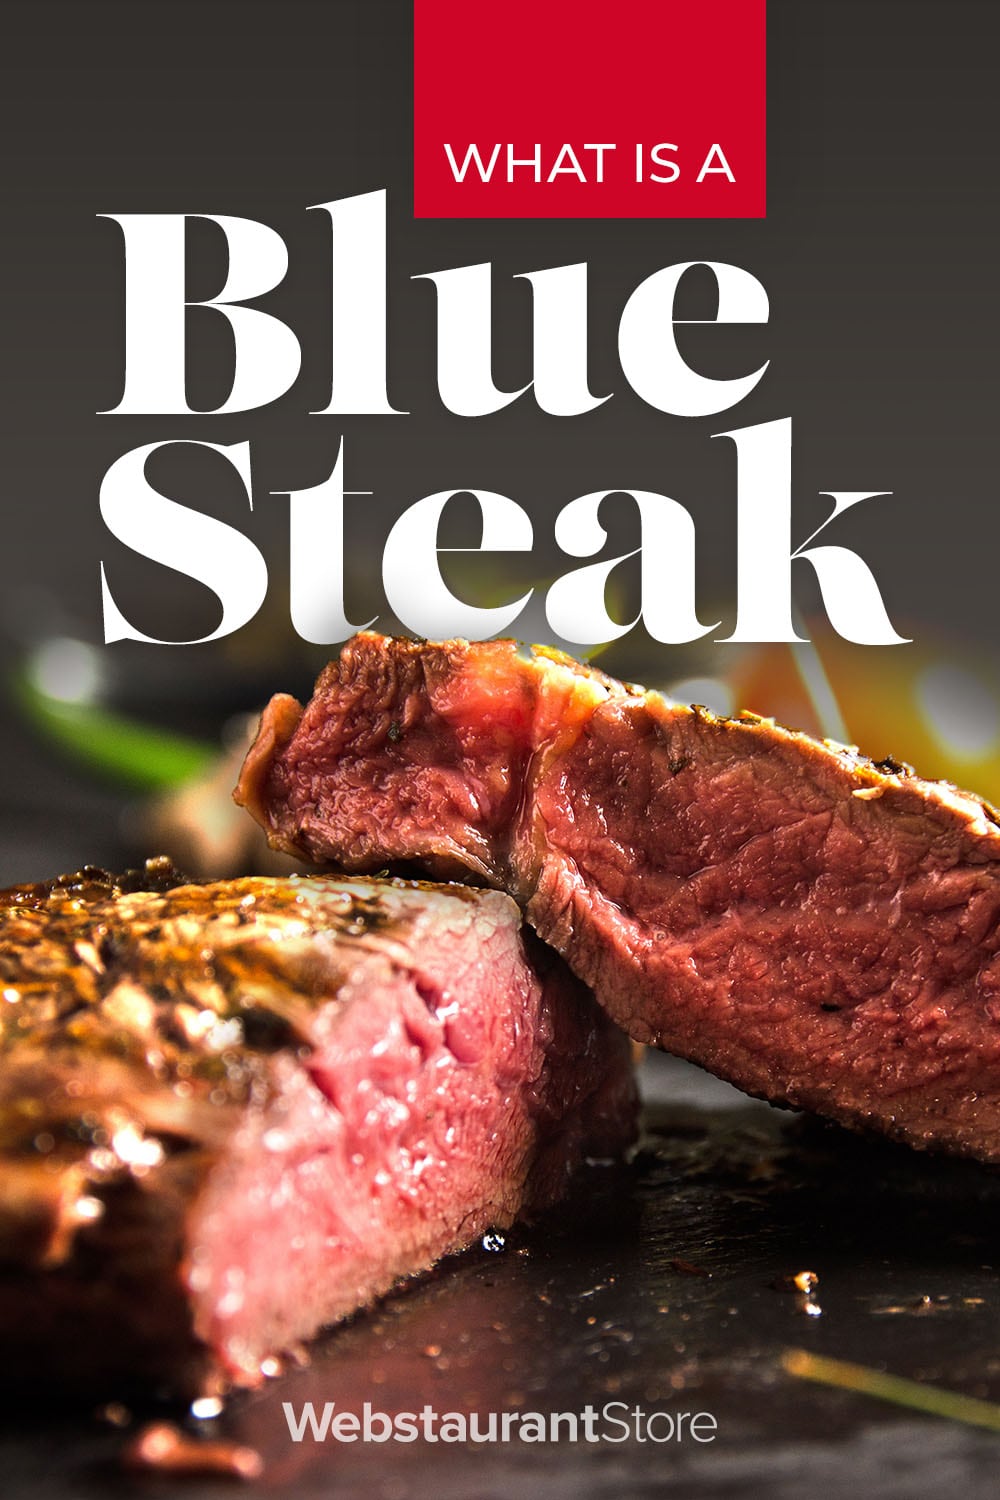 https://cdnimg.webstaurantstore.com/images/blogs/3758/blue_steakpinterest.jpg